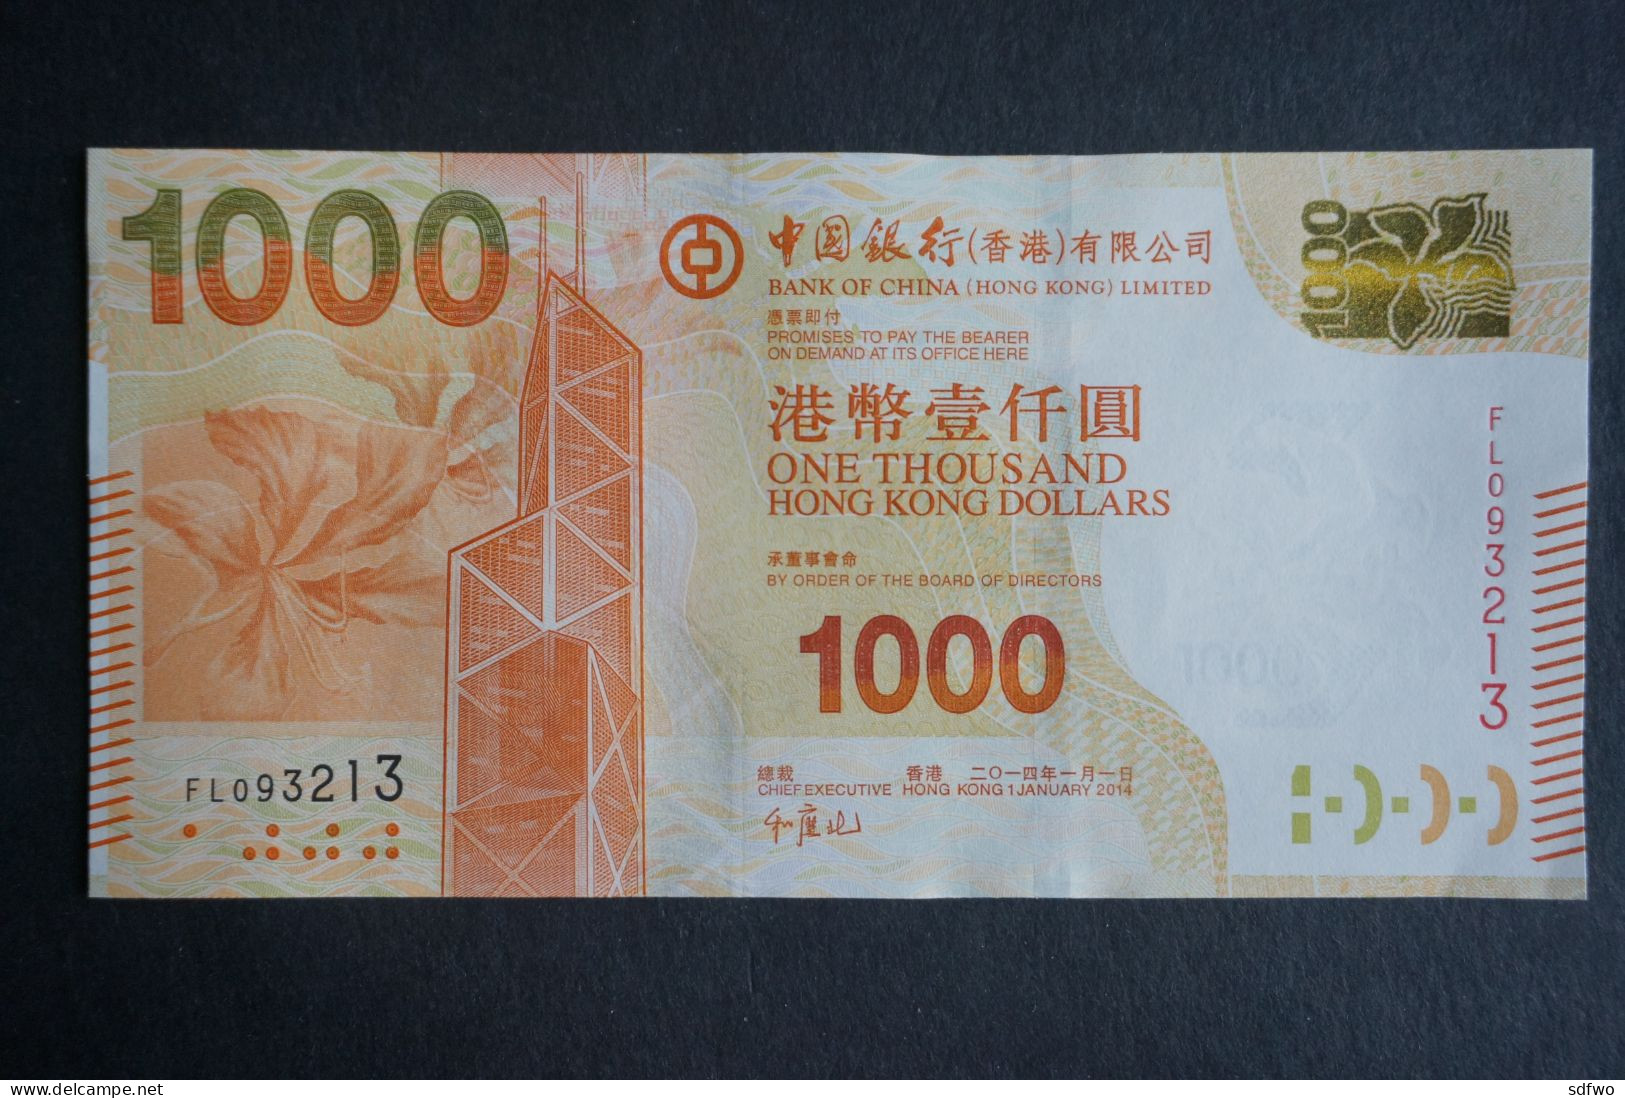 (M) HONG KONG 2014 BANK OF CHINA BANKNOTES 1000 DOLLARS - #FL093213 (UNC) - Hongkong